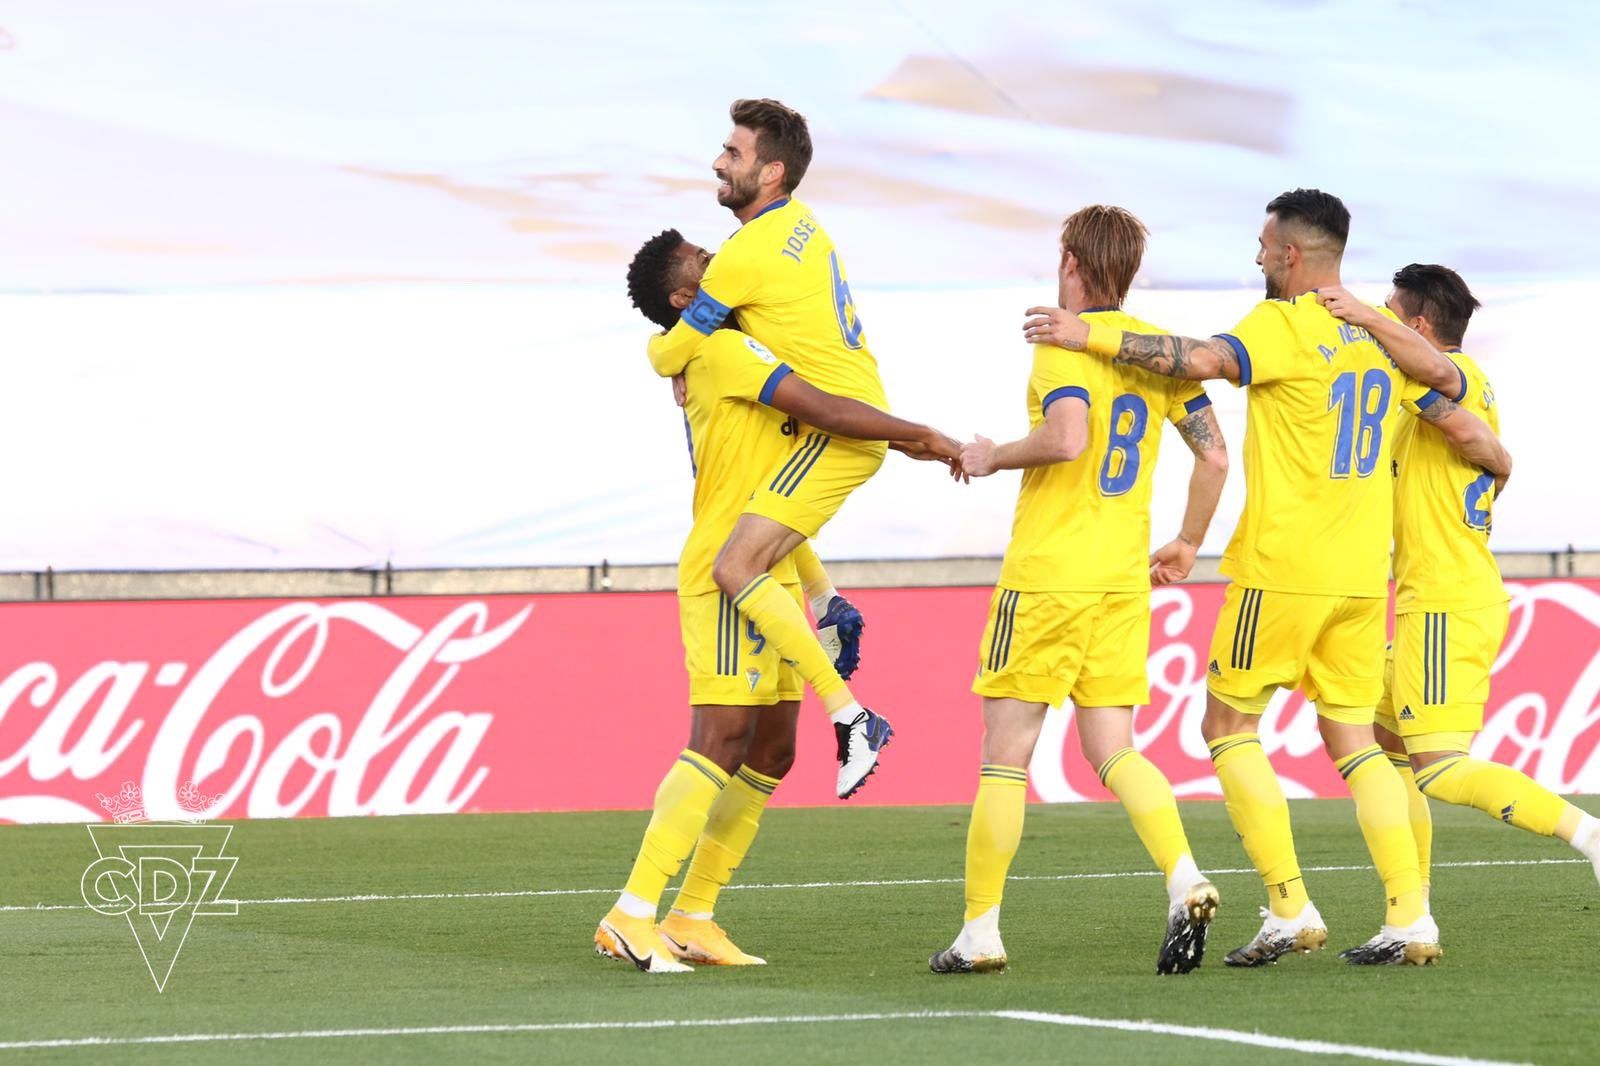 Los cadistas celebran el gol que le daría la victoria ante el Madrid. FOTO: Cádiz CF